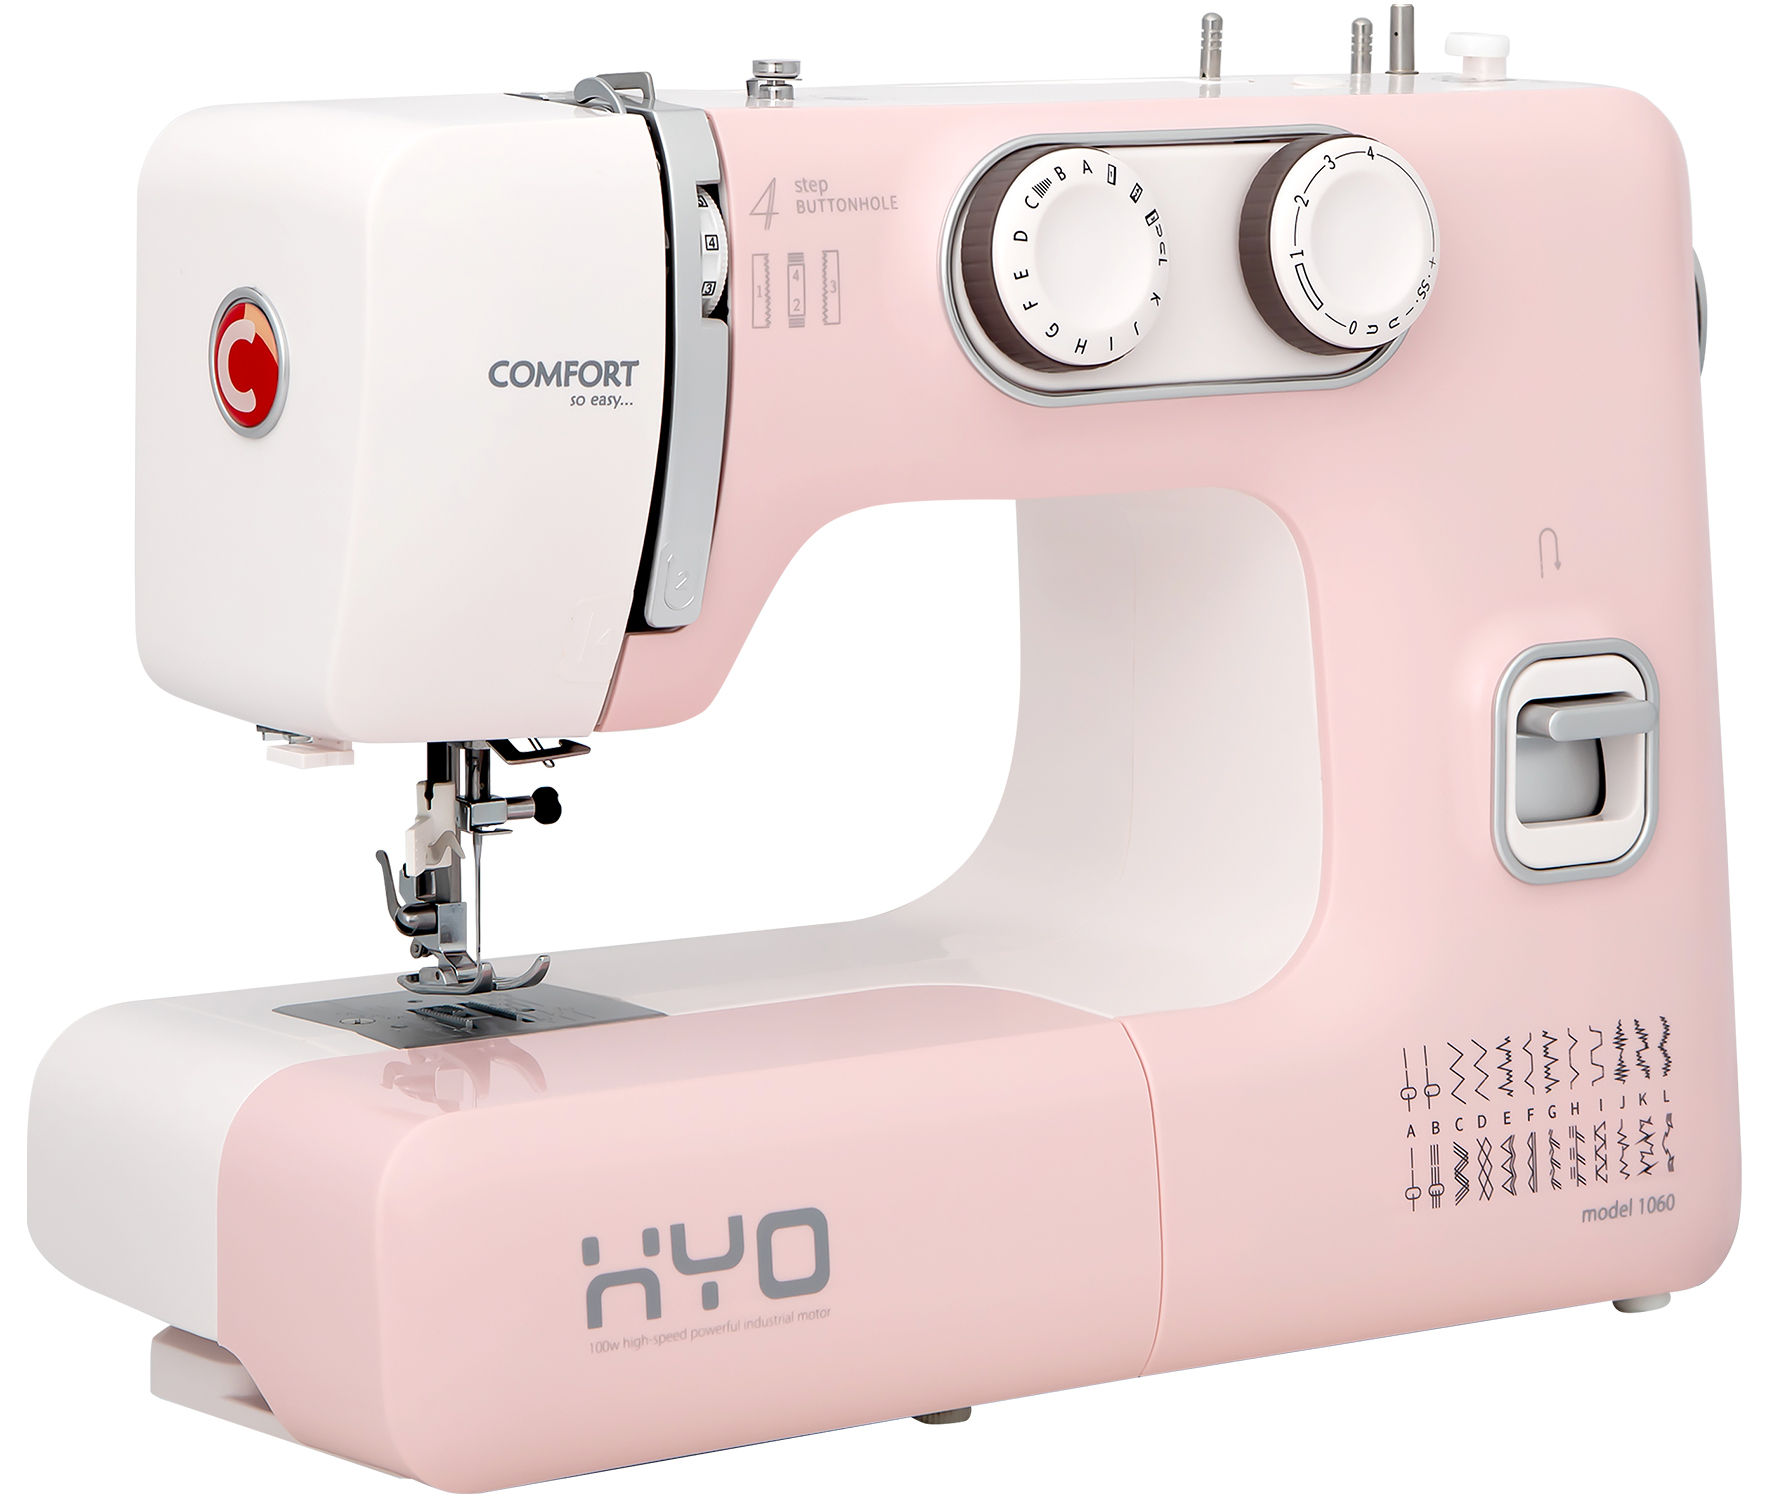 Швейная машина COMFORT 1060 белый, розовый швейная машина singer studio 15 белый розовый